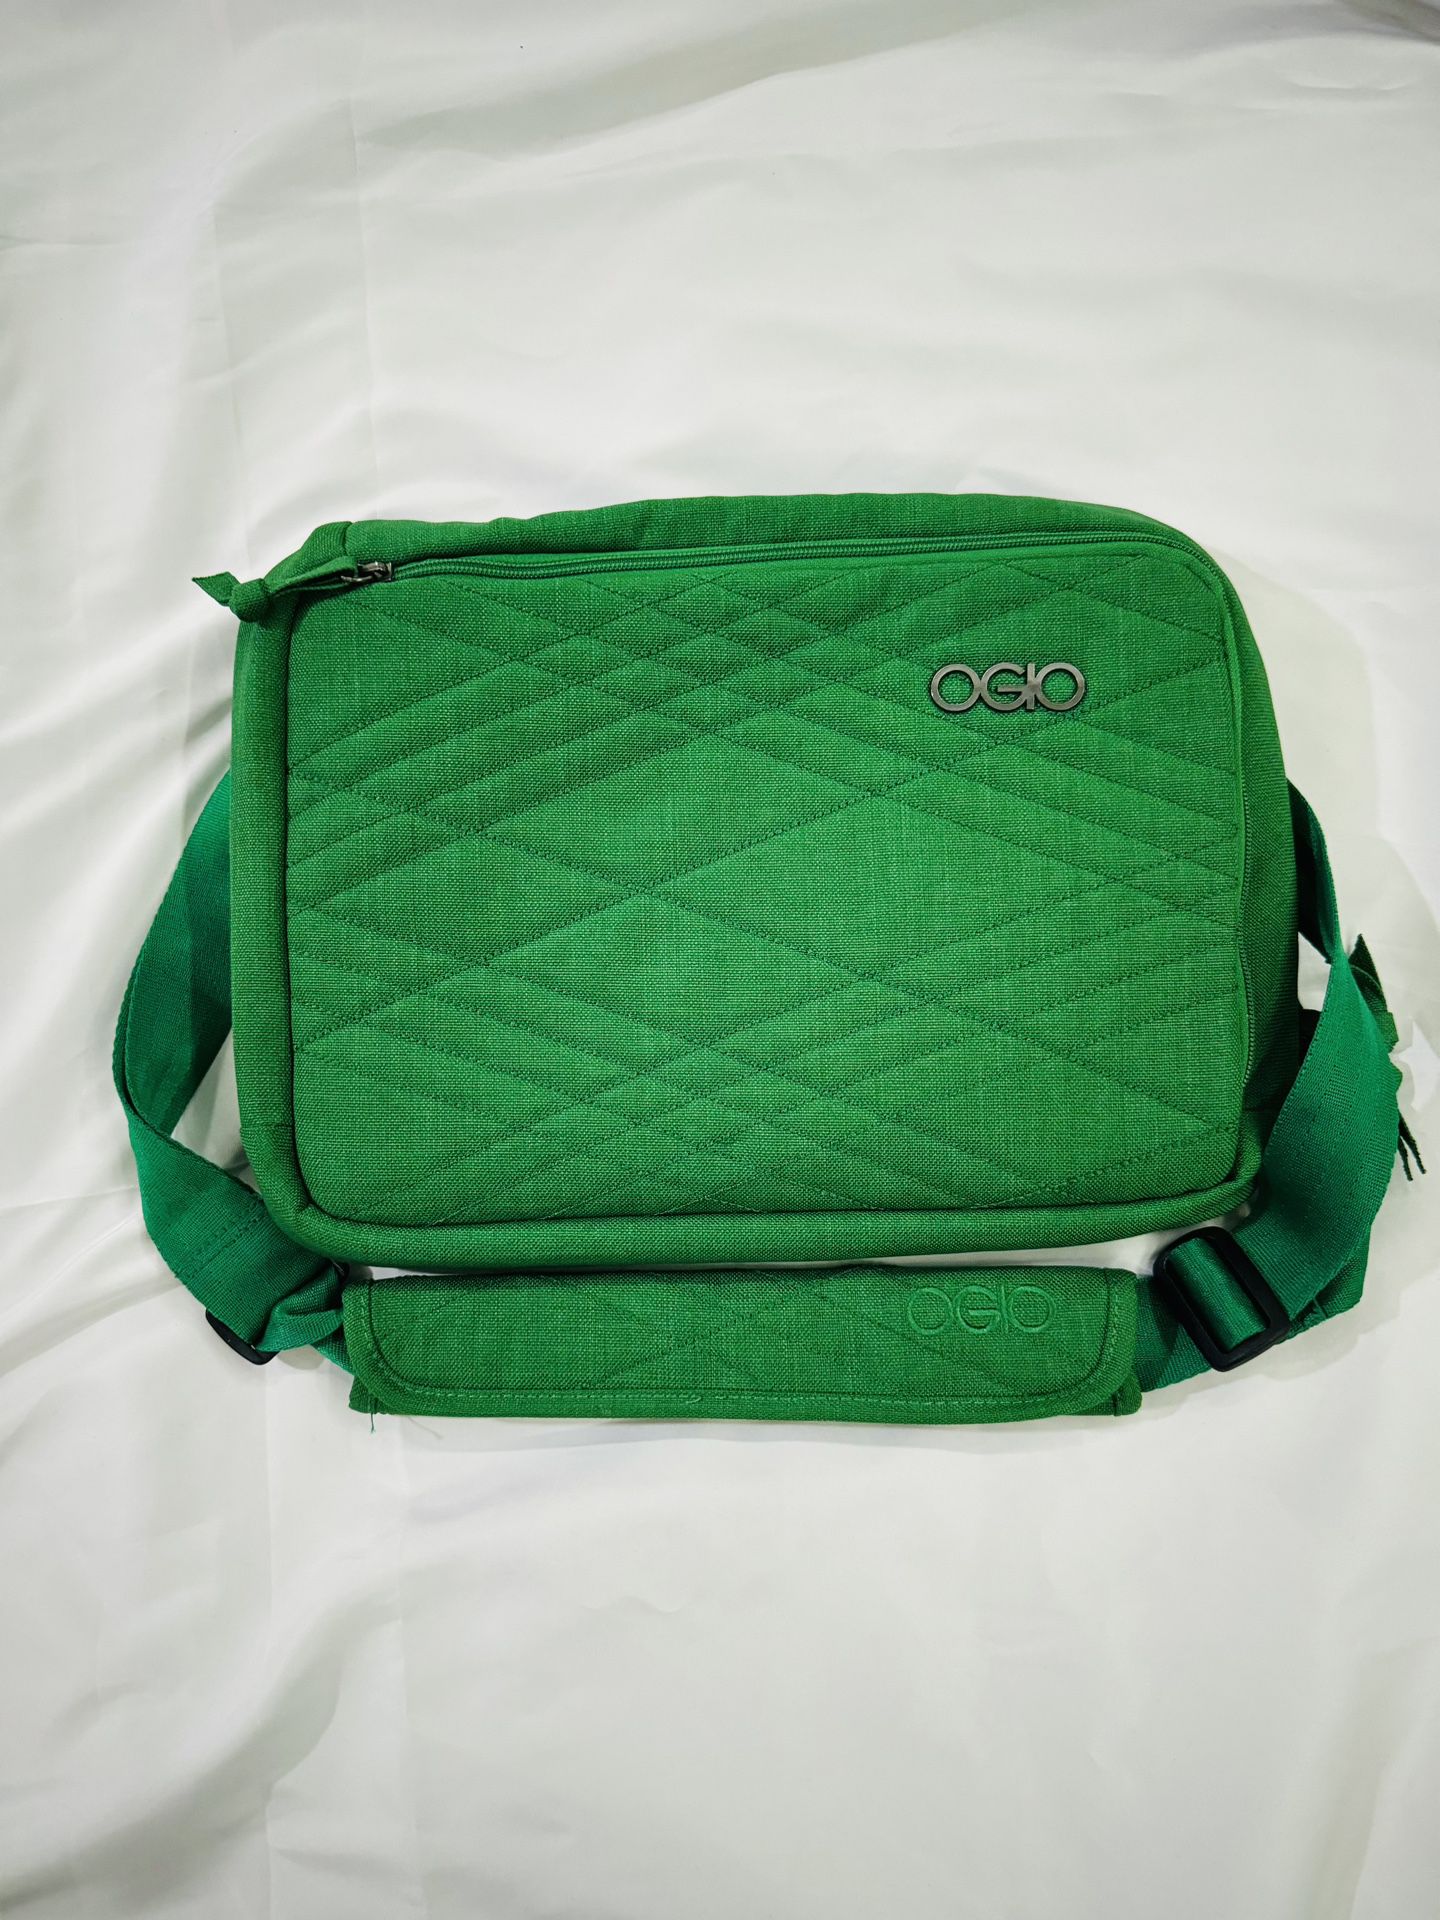 GREEN Ogio Tribeca Over The Shoulder Messenger Pack or Carry Hand Bag Tide RARE